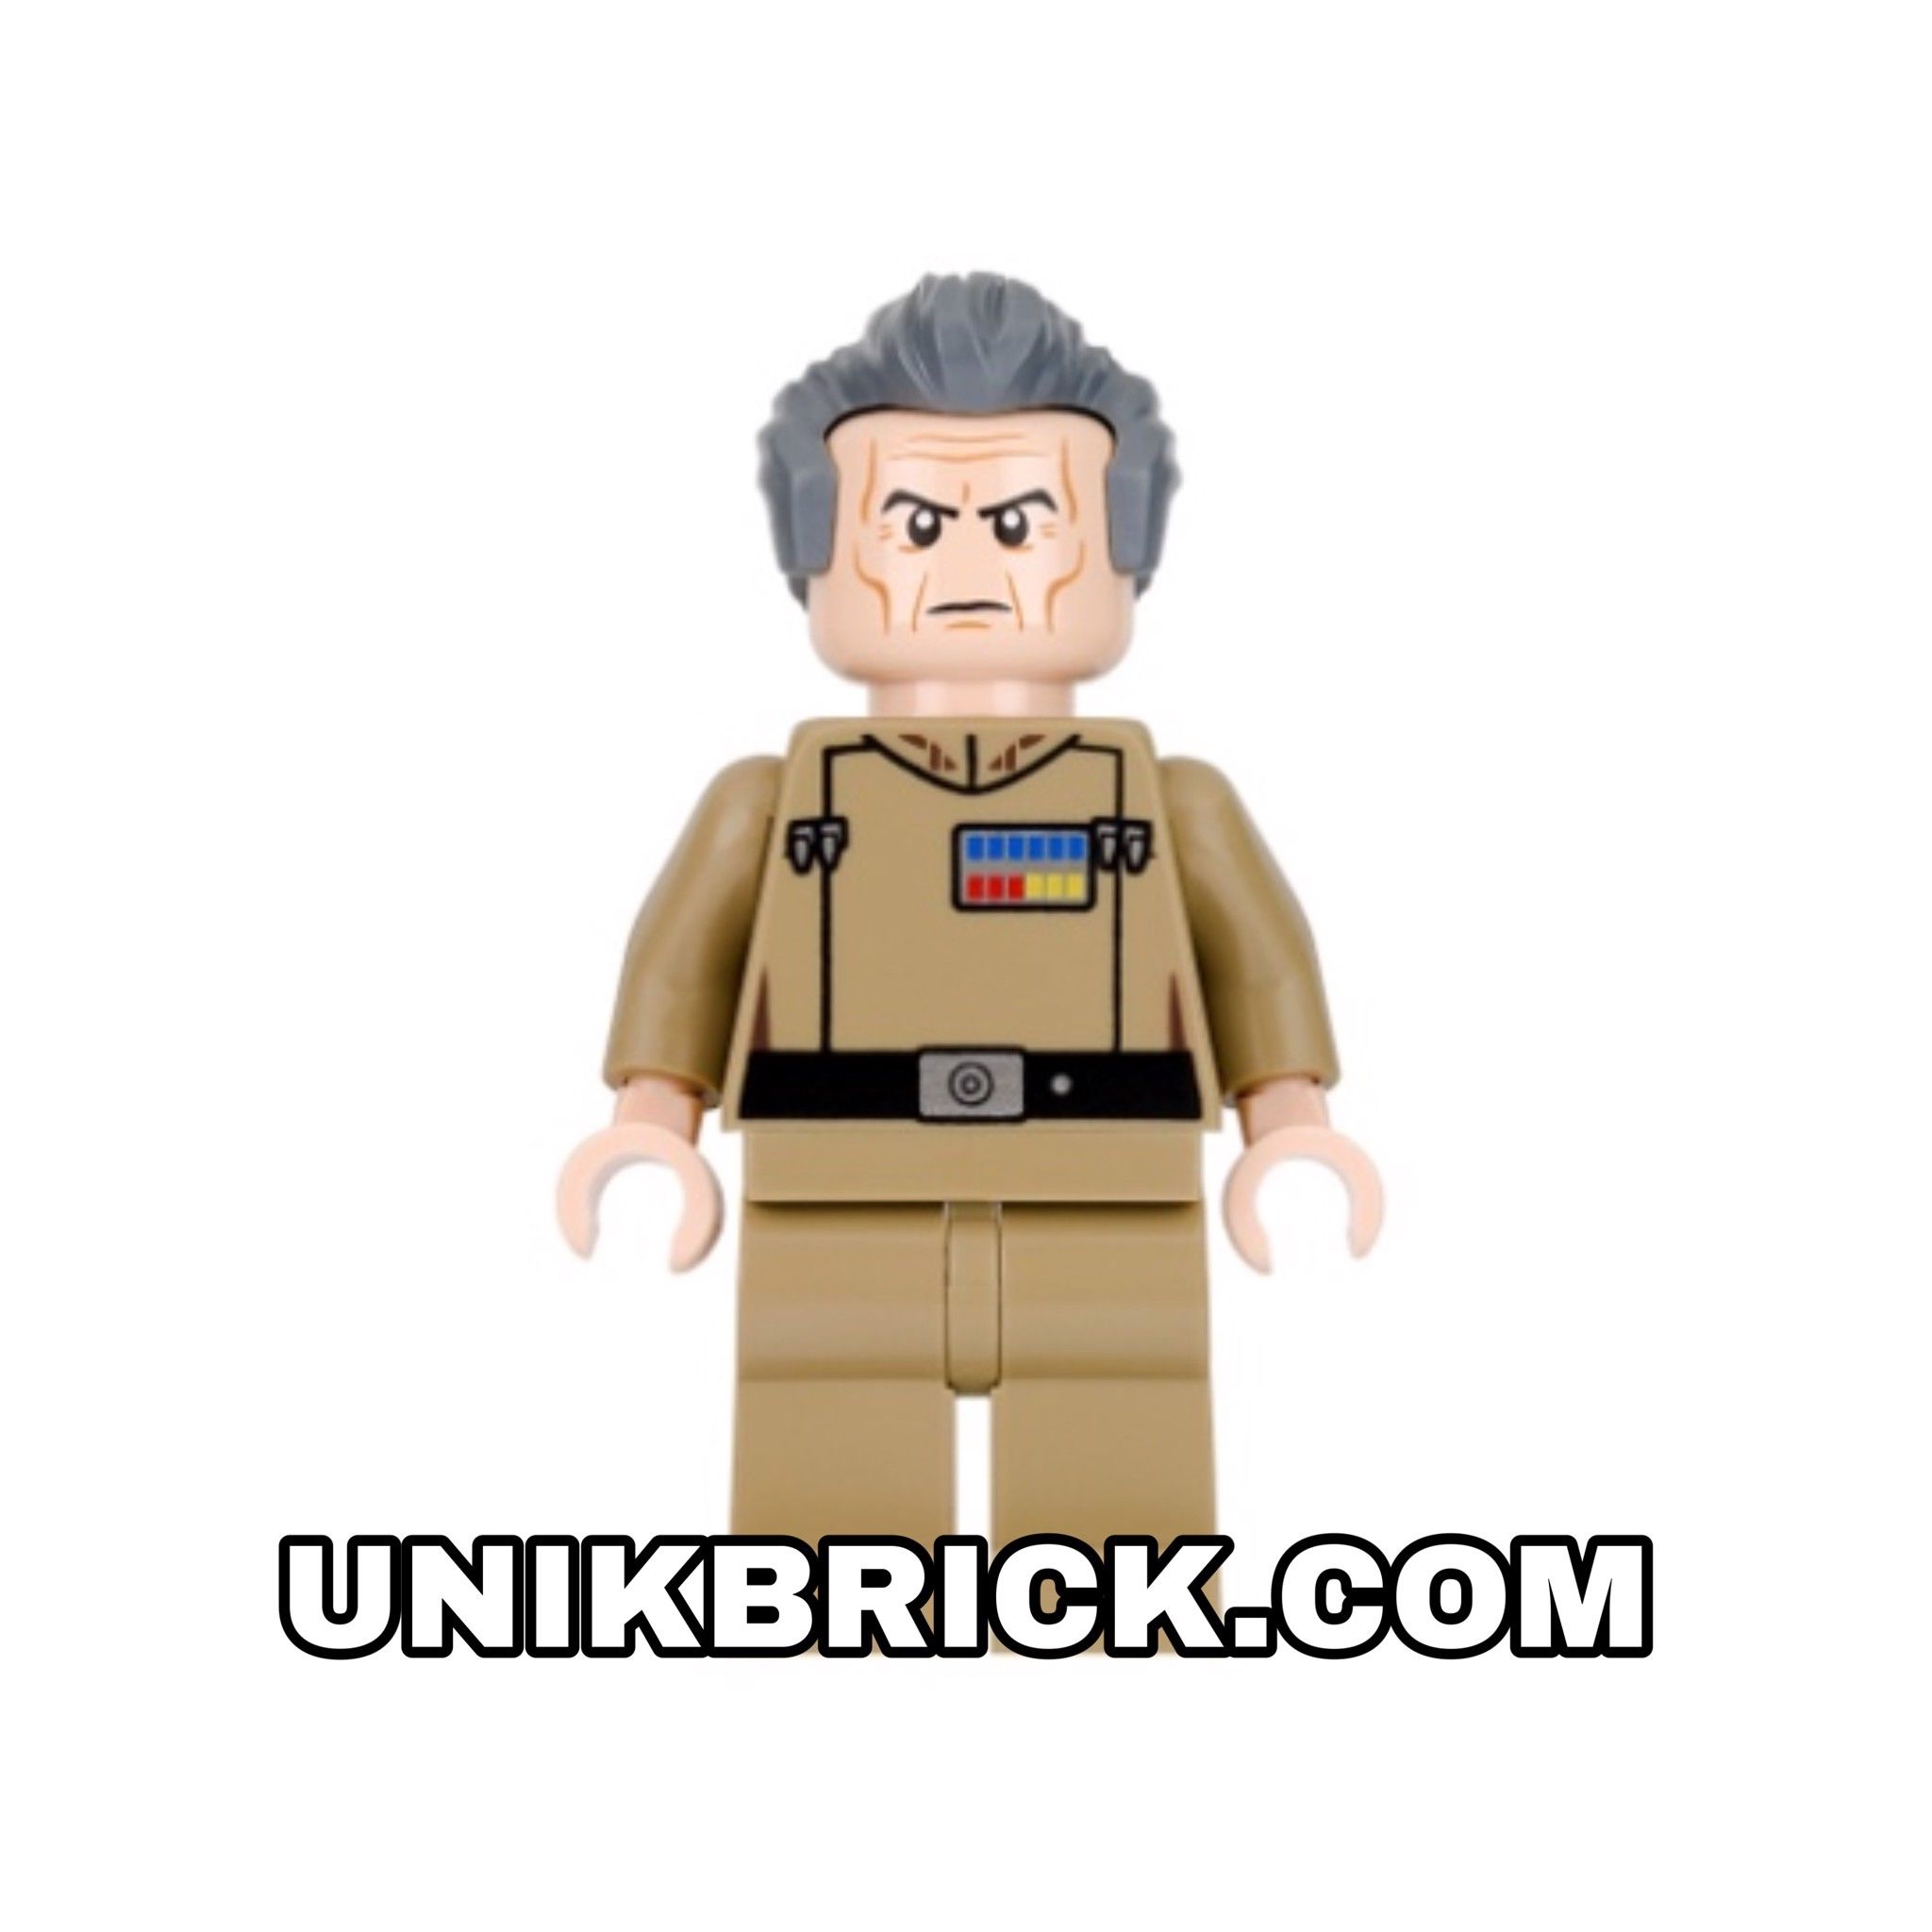 [ORDER ITEMS] LEGO Grand Moff Wilhuff Tarkin Dark Tan Uniform